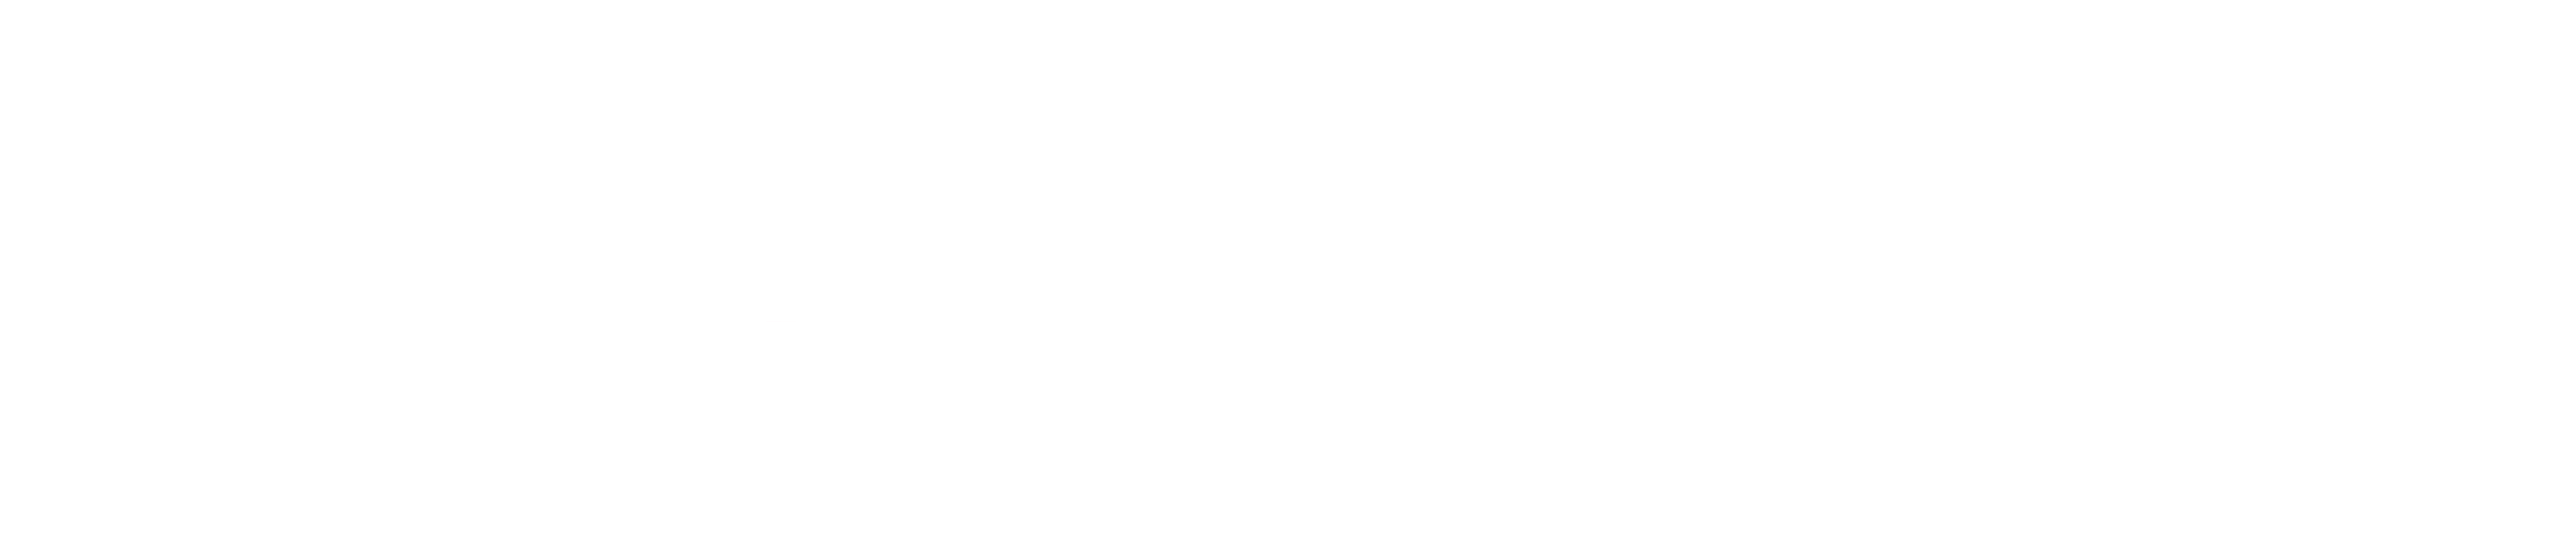 Endesa logo grand pour les fonds sombres (PNG transparent)